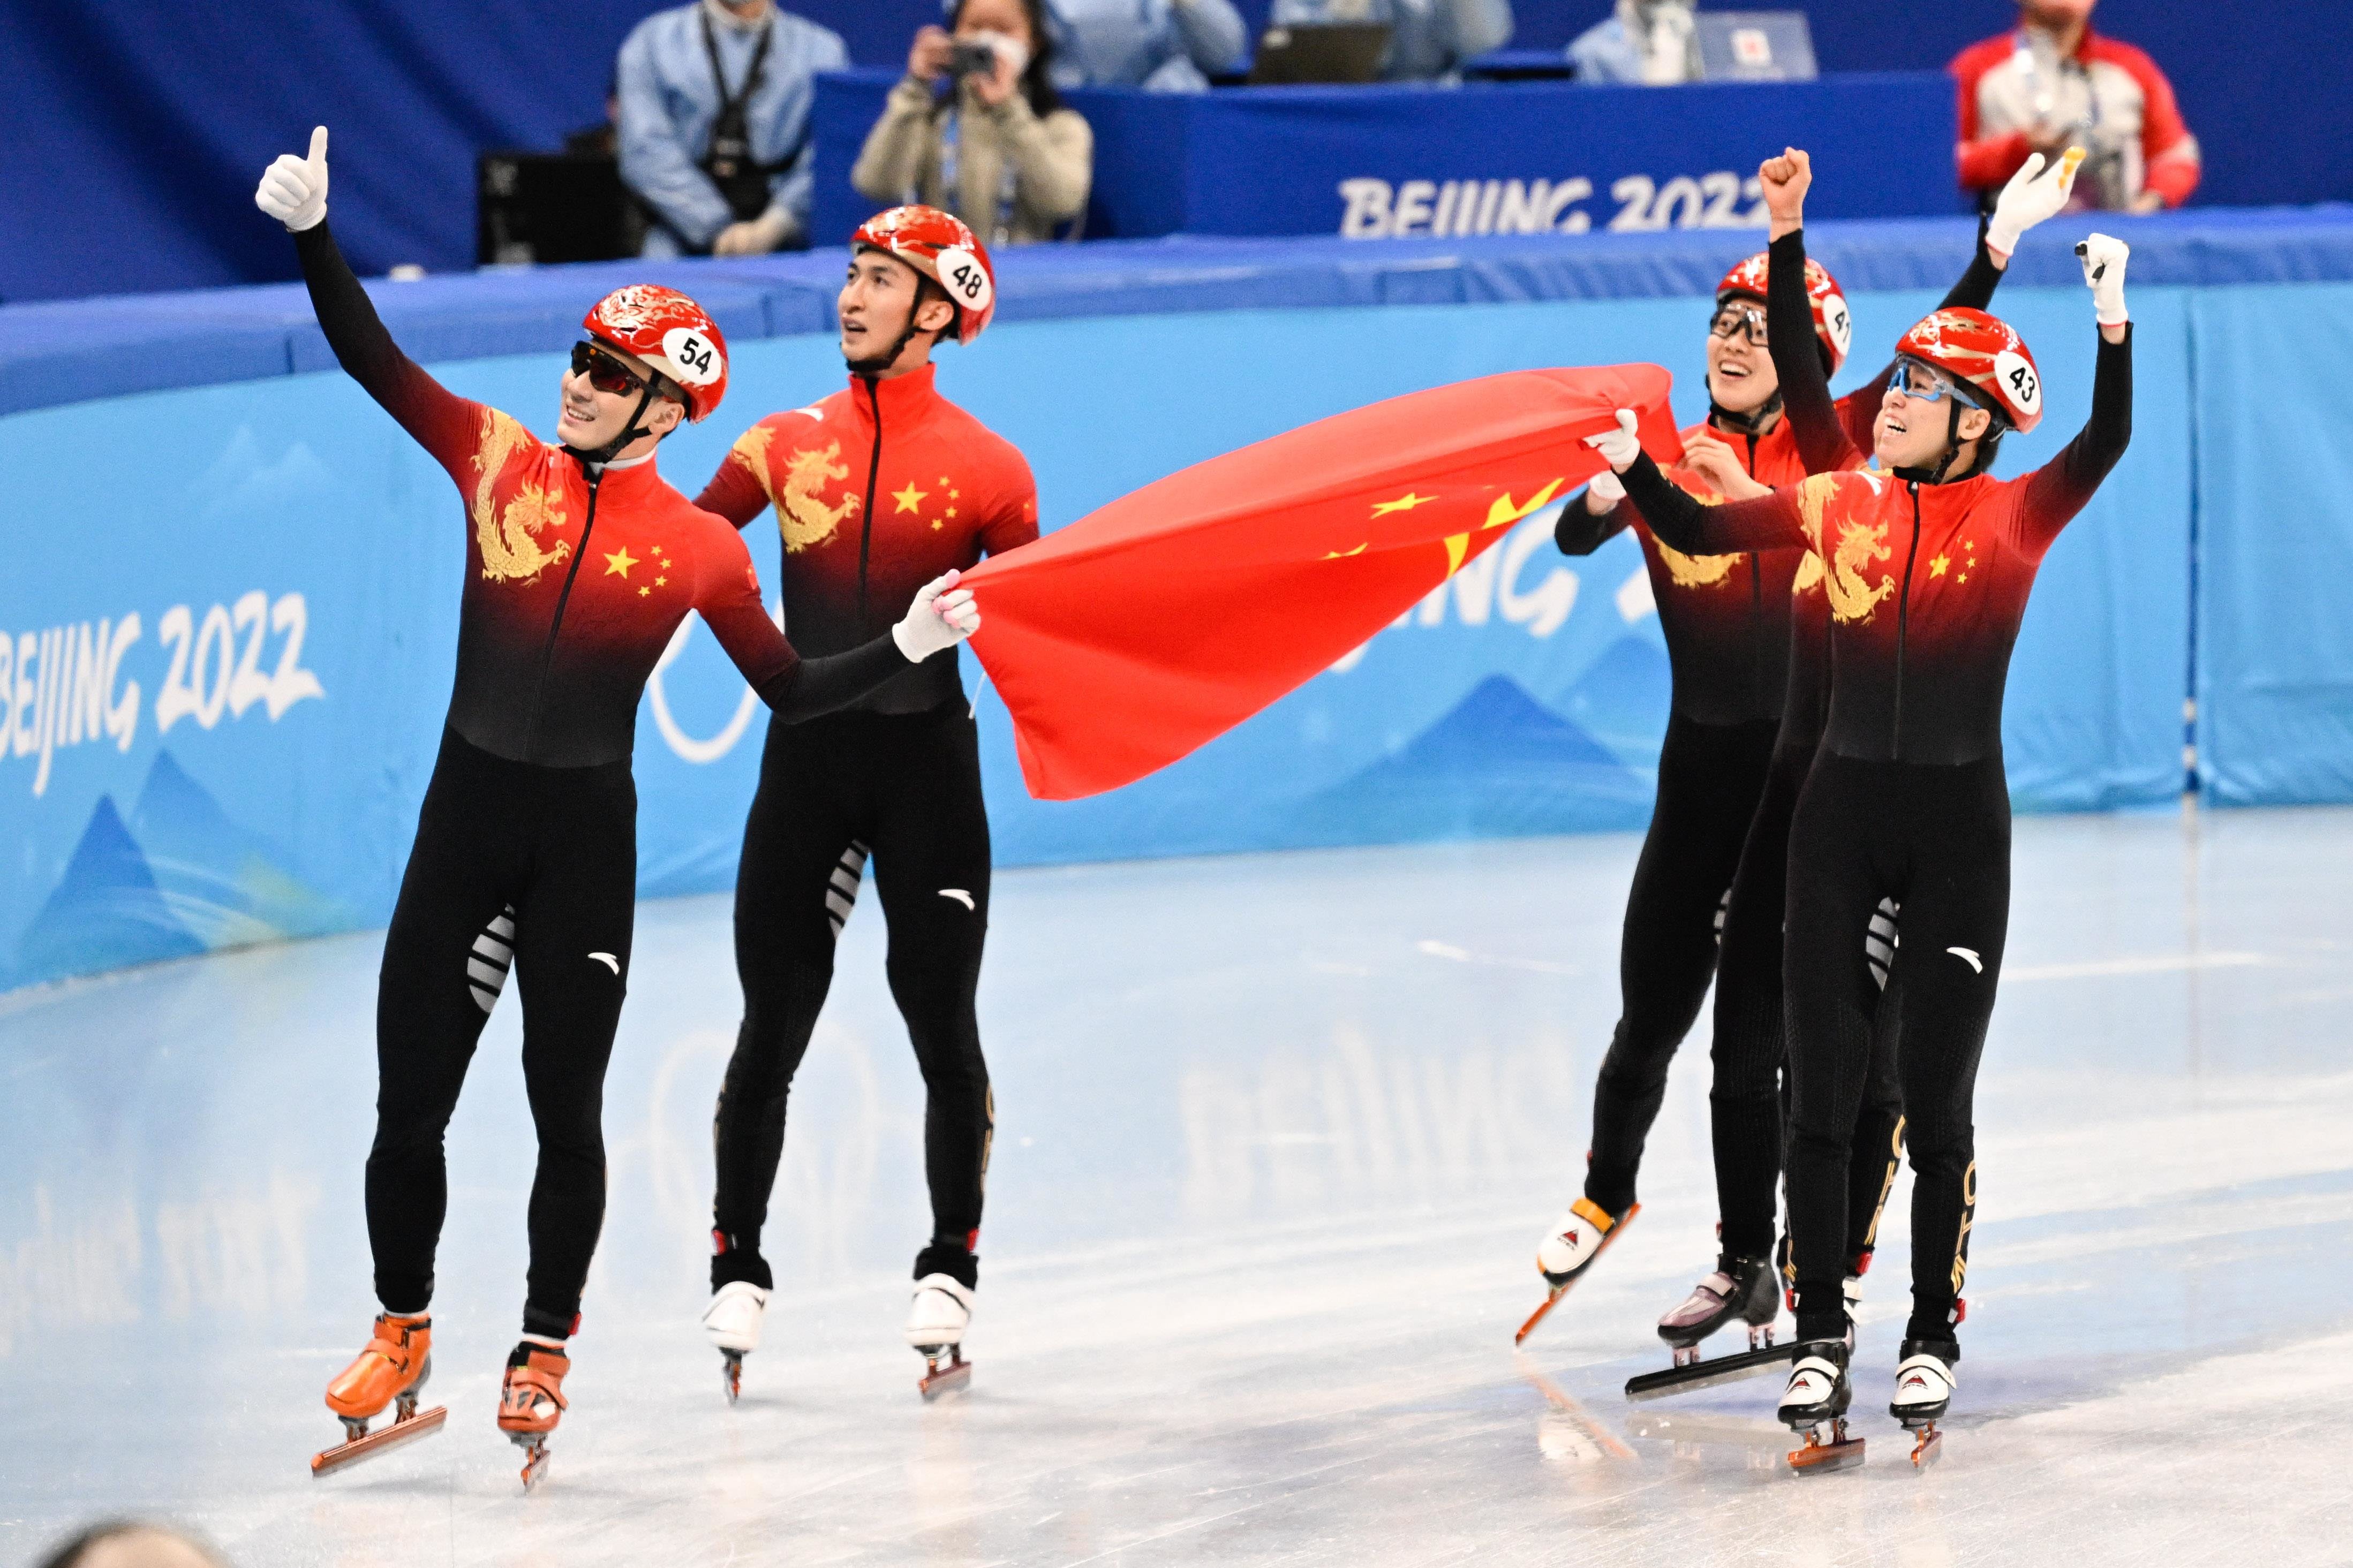 2022冬奥会中国首金图片